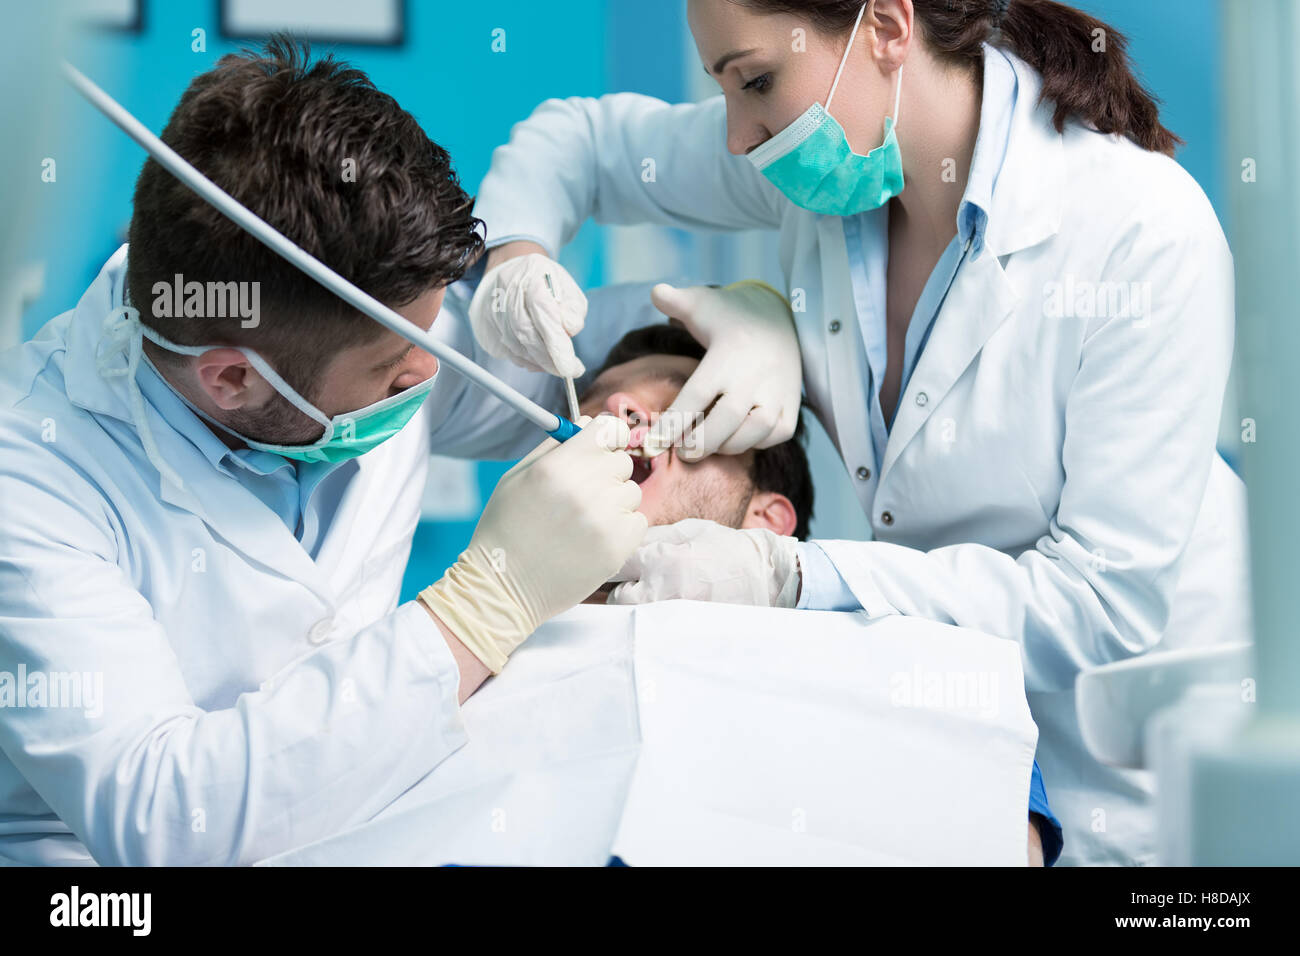 Zahnmedizin-Bildung. Männliche Zahnarzt Arzt Lehrer Behandlungsablauf erklären. Stockfoto